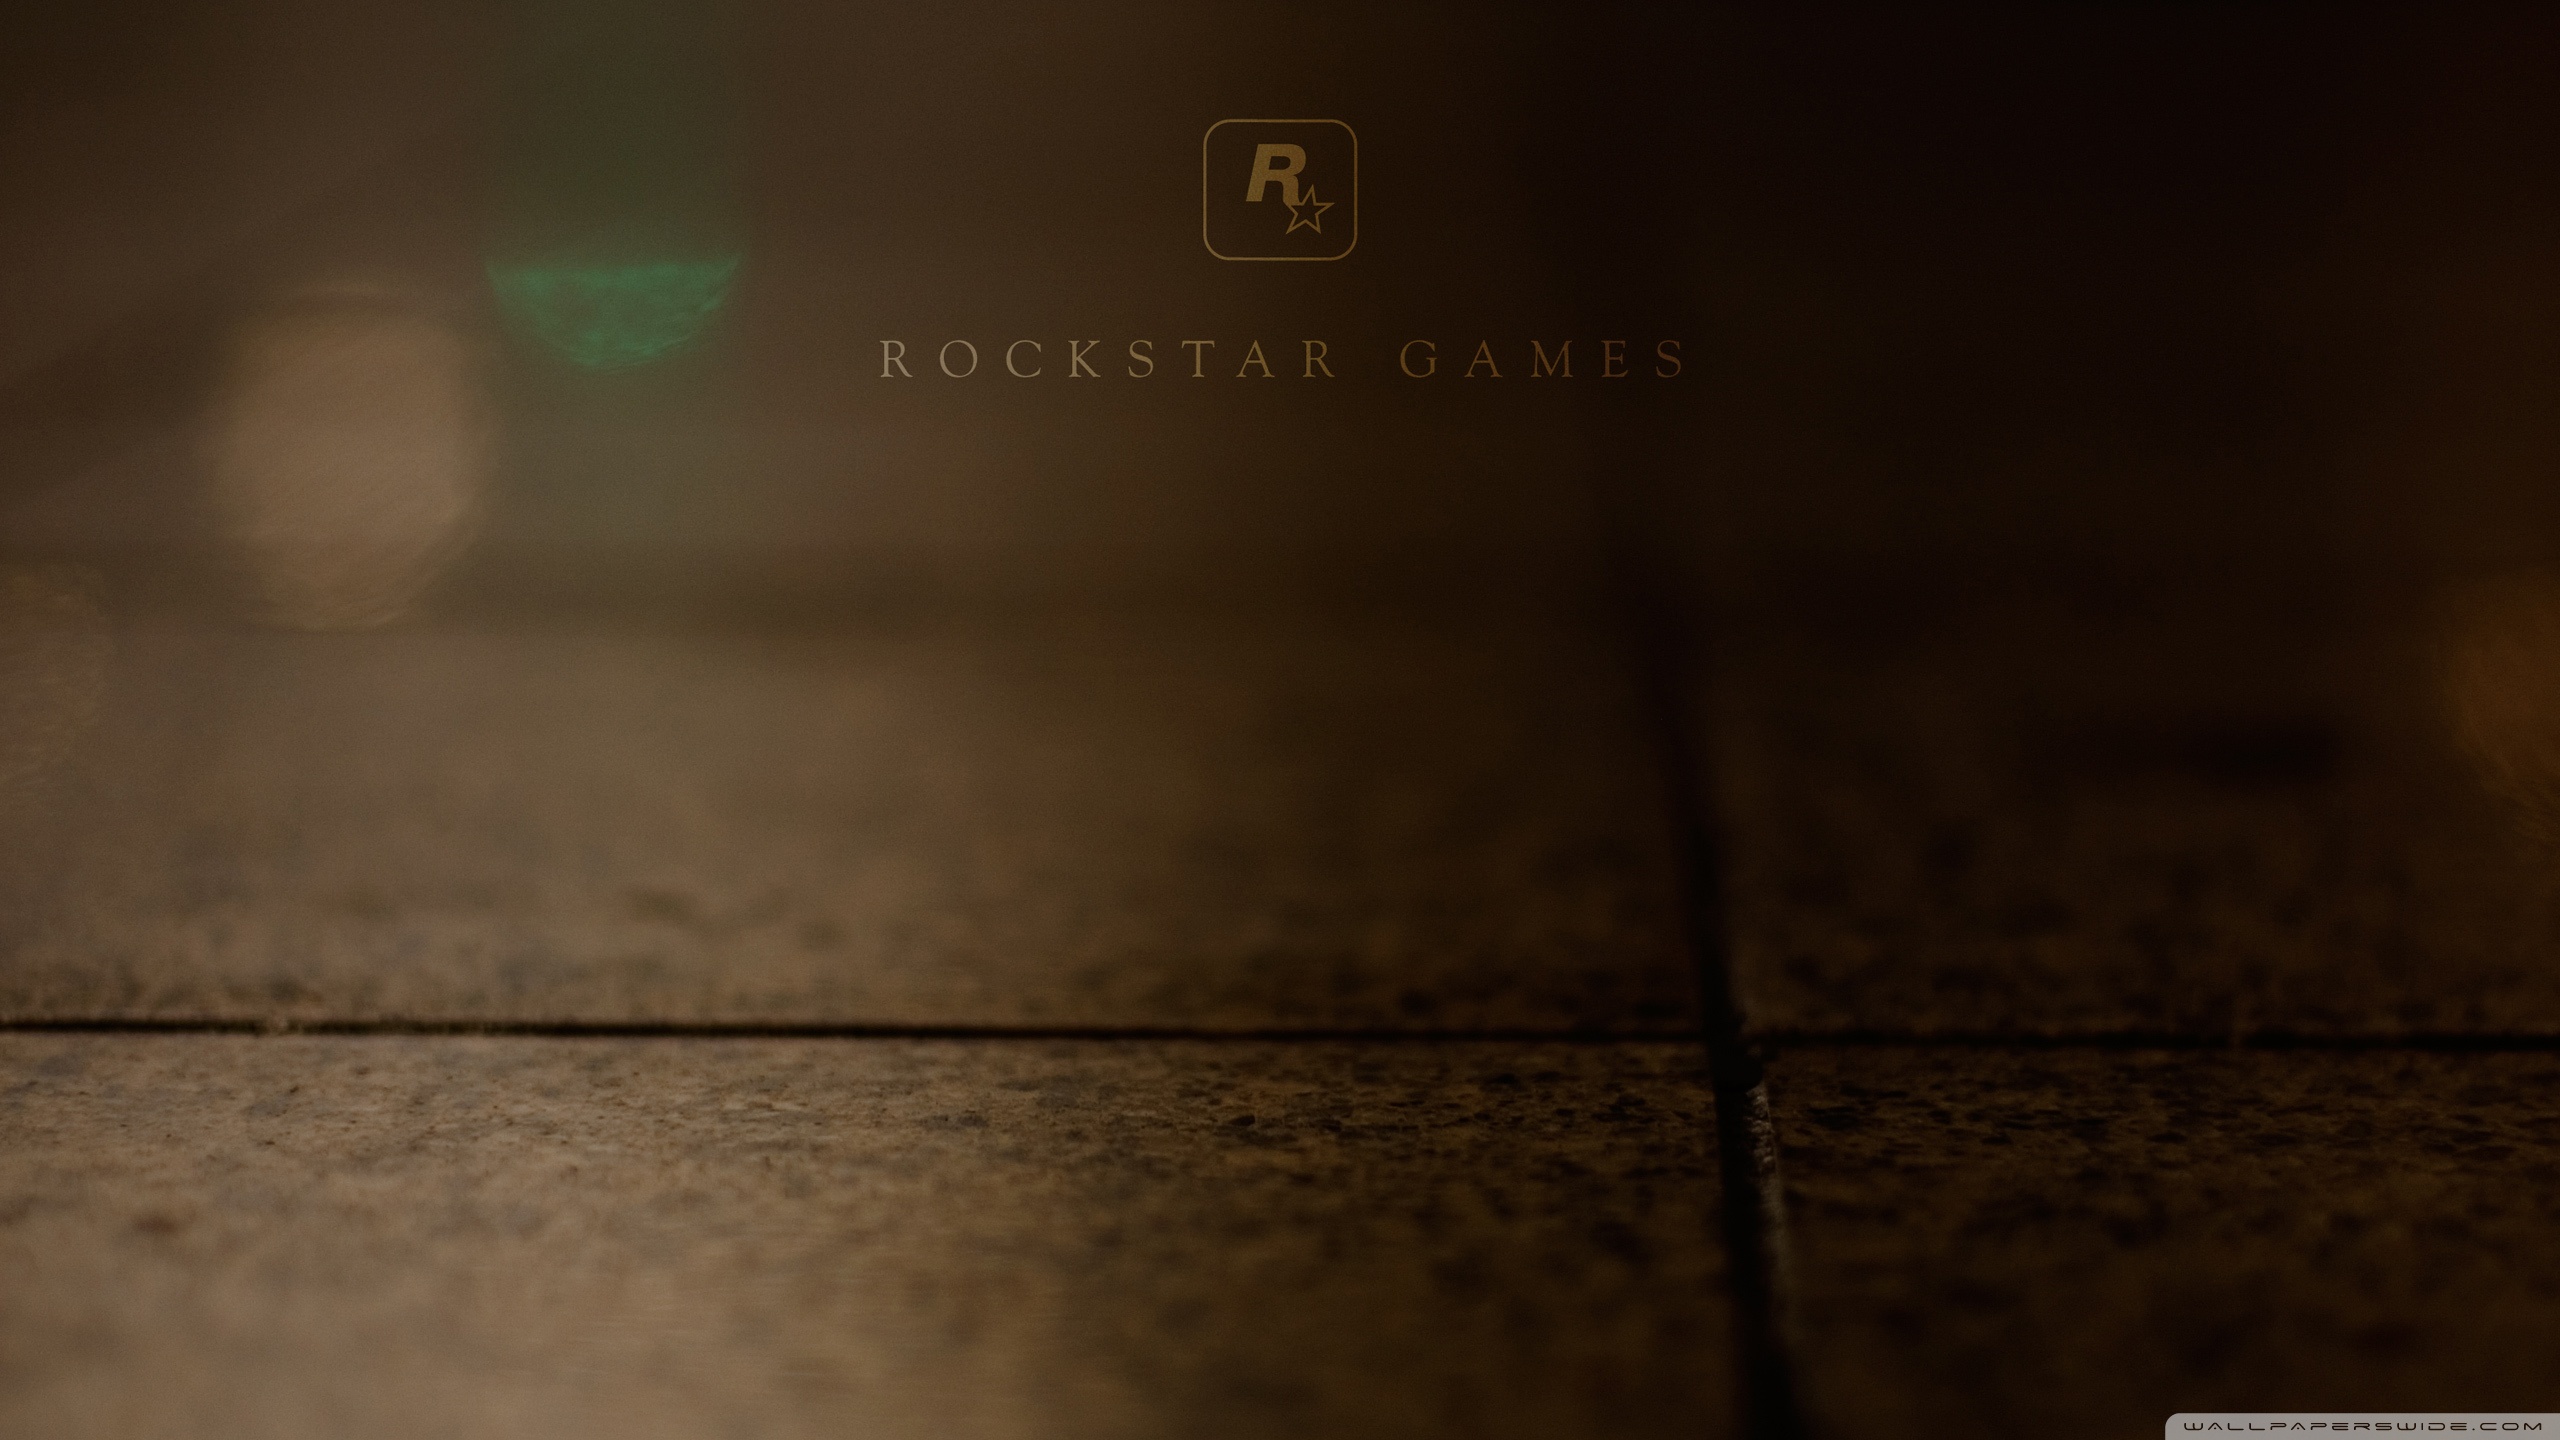 Download Rockstar Games Wallpaper 2560x1440 Wallpoper